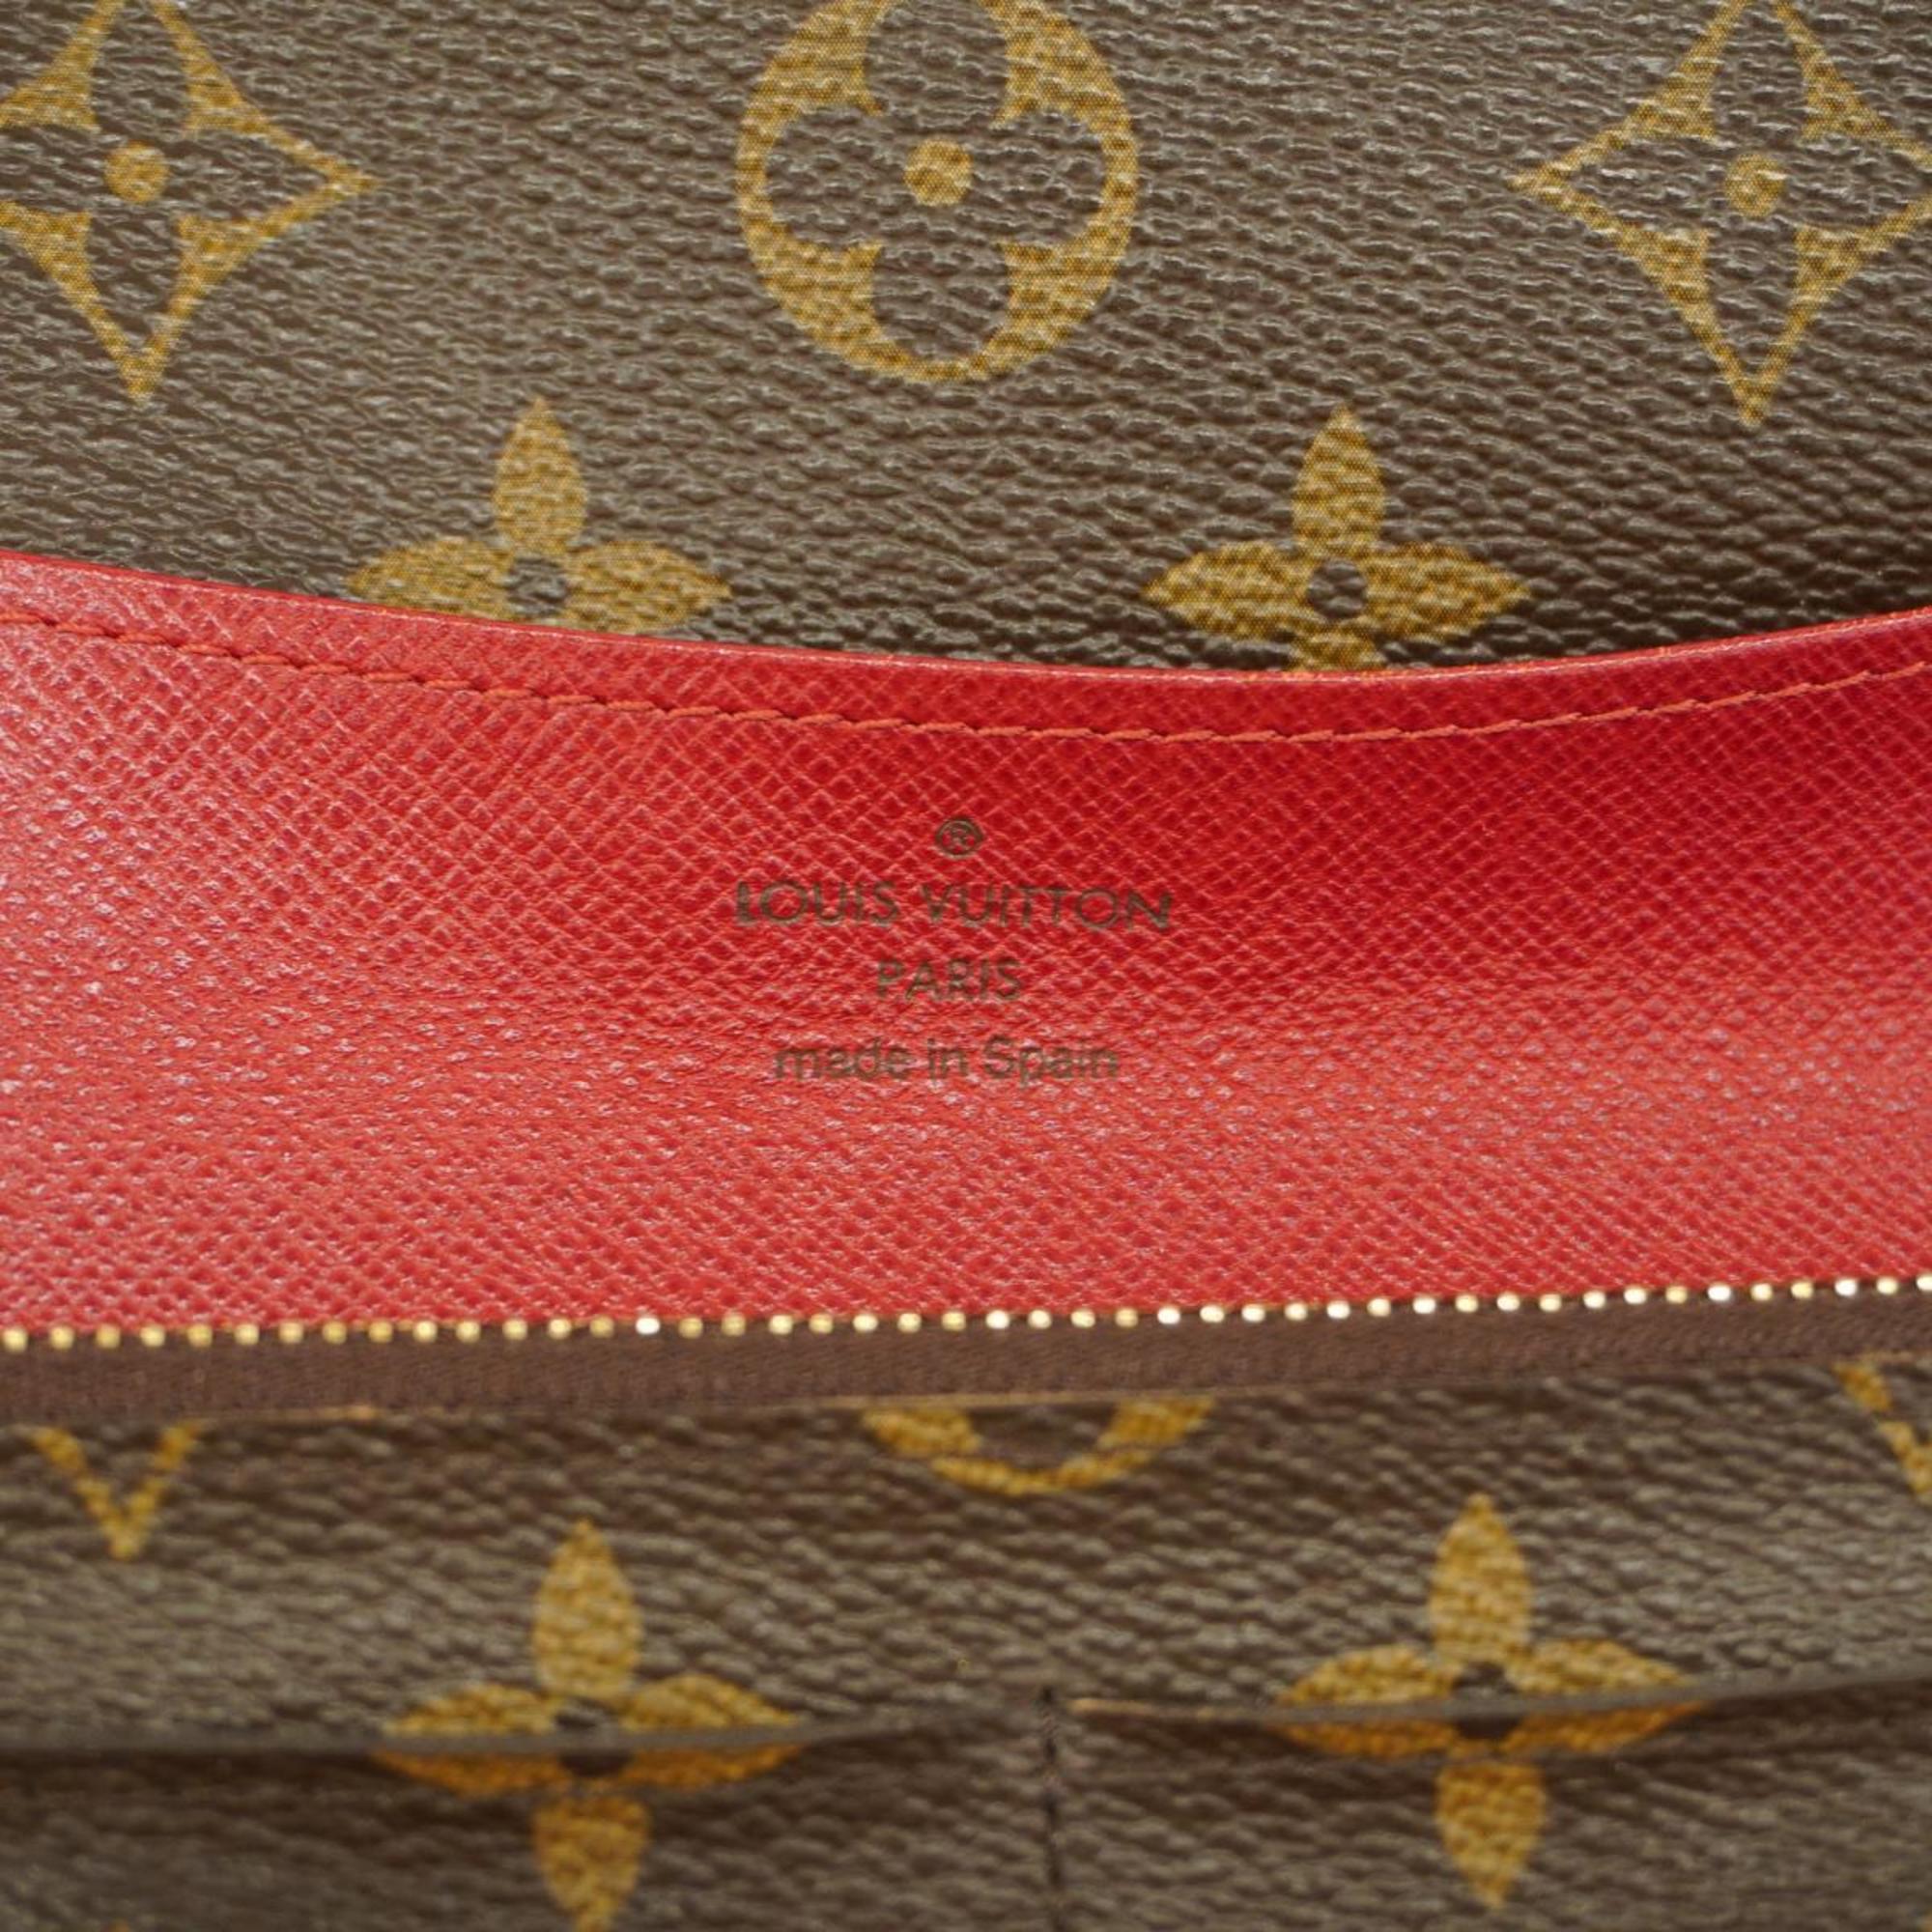 ルイ・ヴィトン(Louis Vuitton) ルイ・ヴィトン 長財布 モノグラム ポルトフォイユエミリー M60136 ルージュメンズ レディース